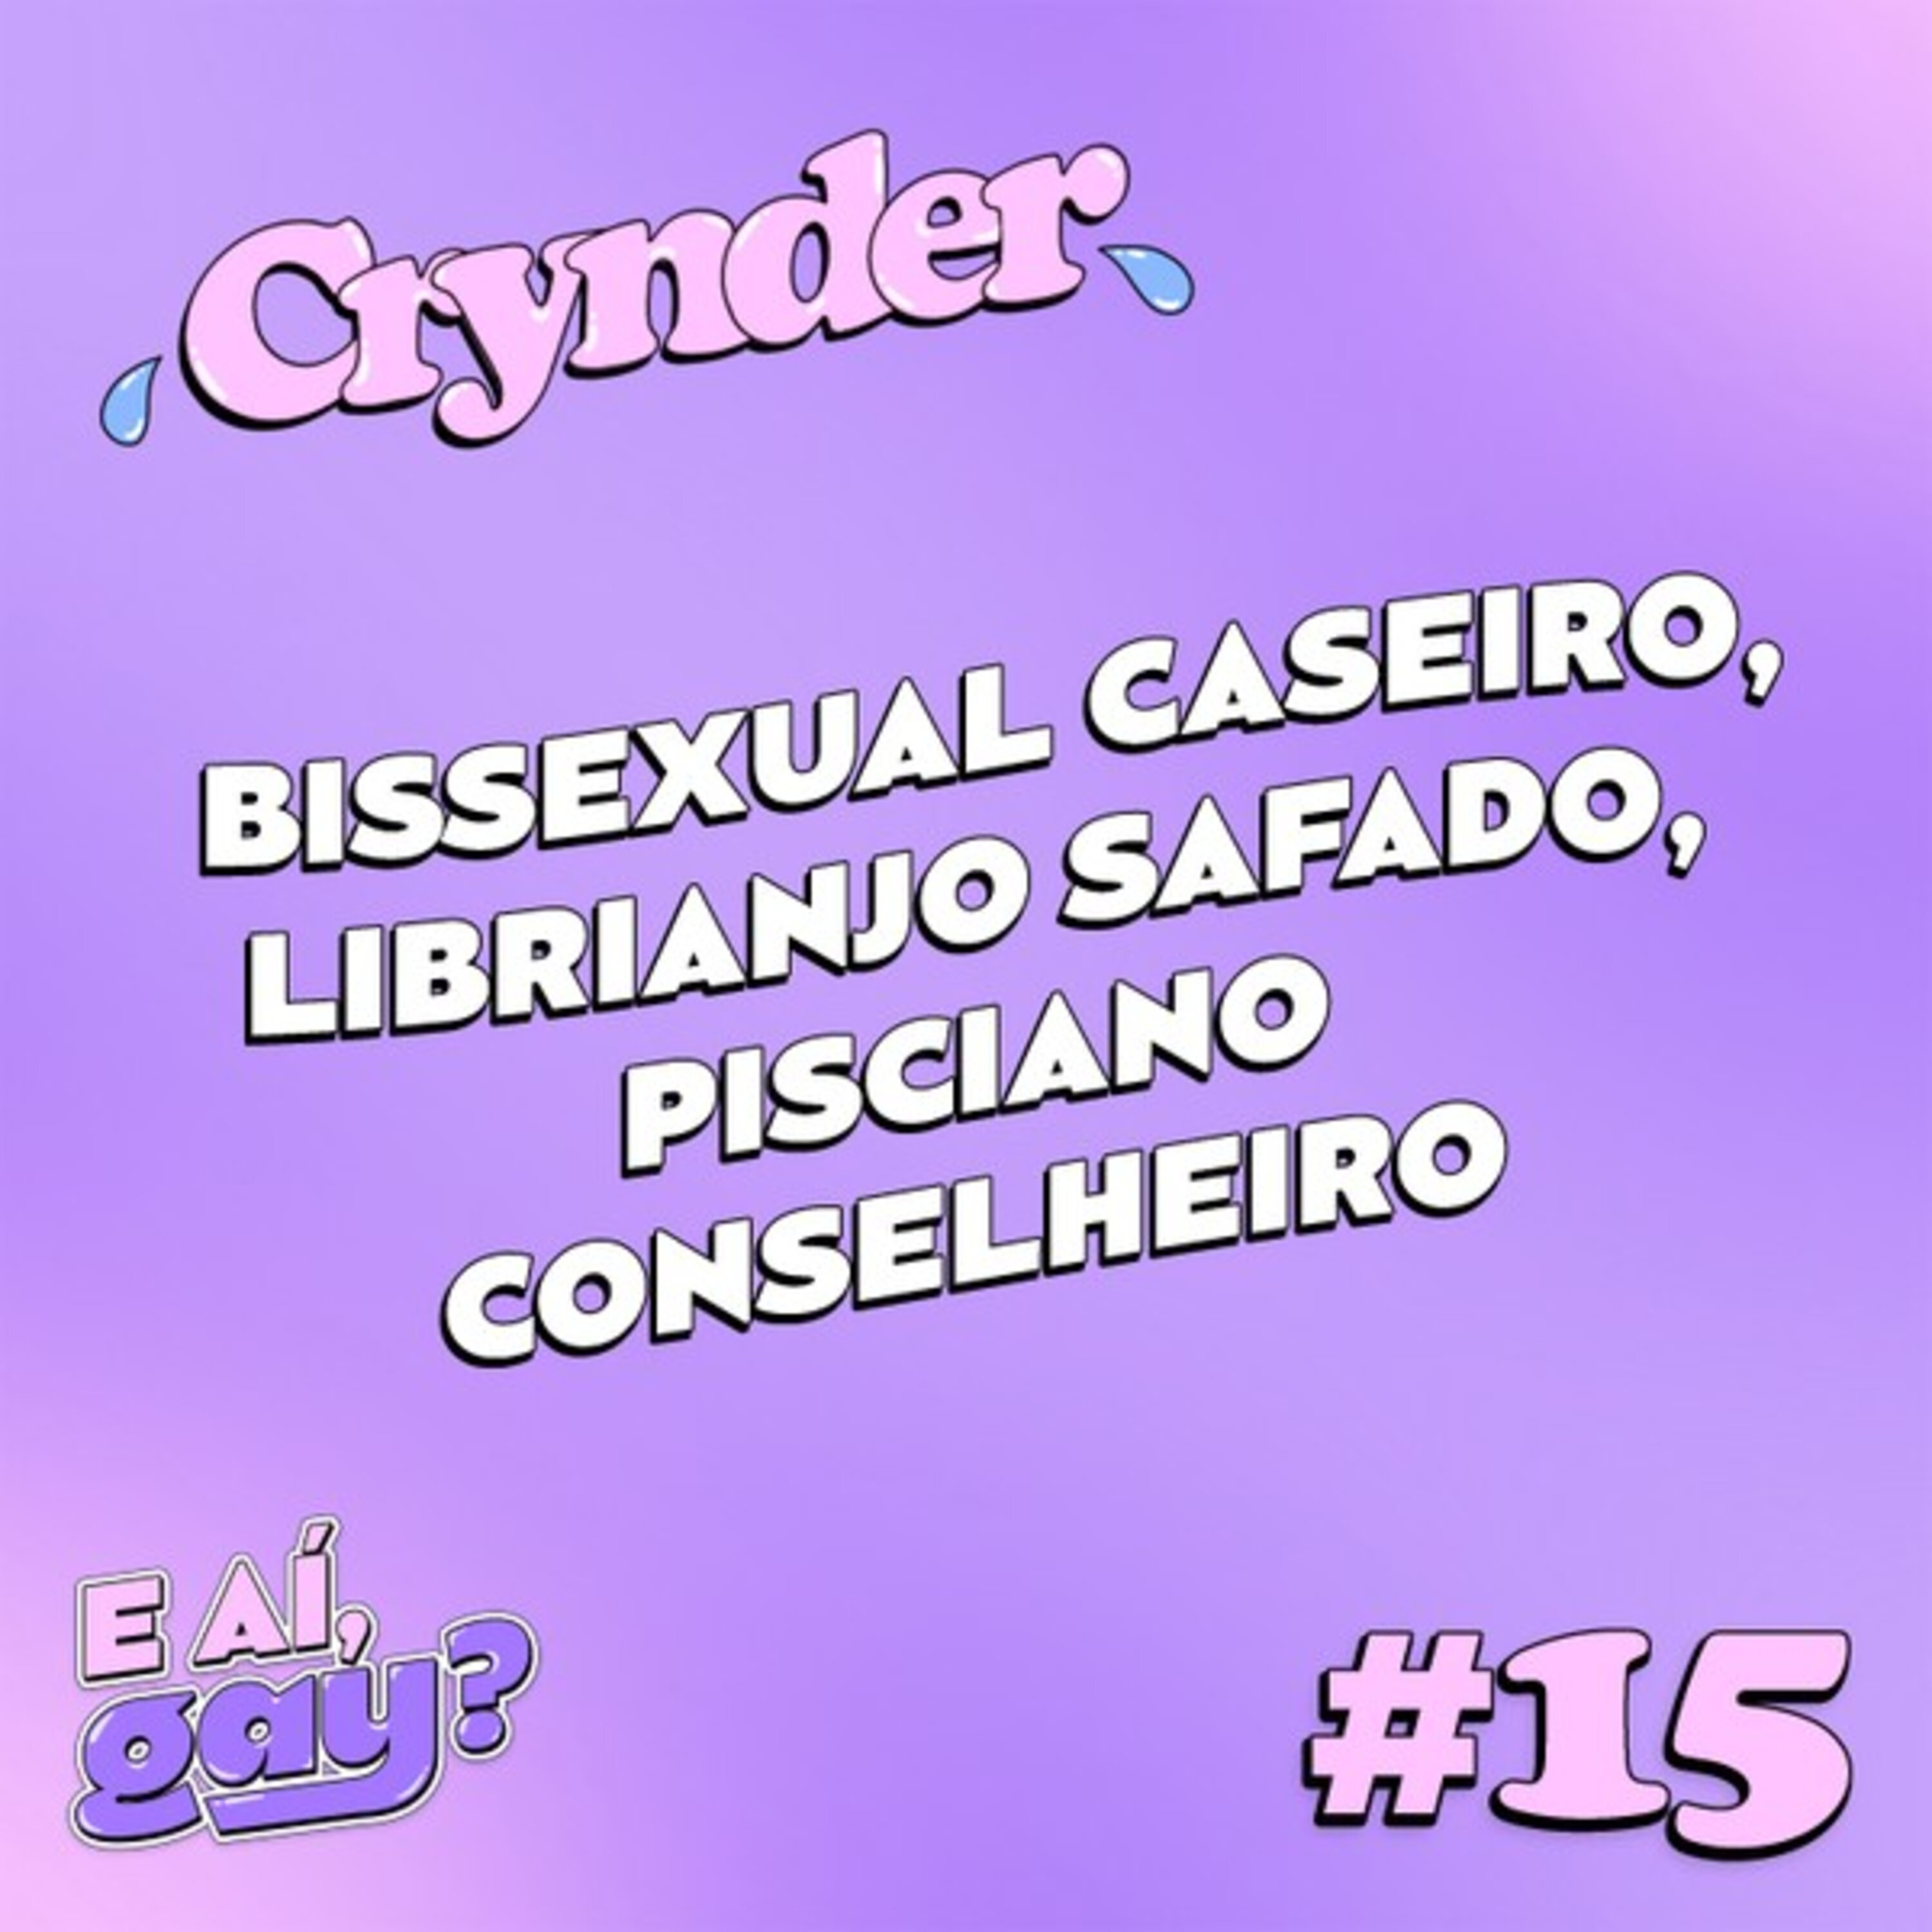 Crynder #15 - Bissexual caseiro, Librianjo safado, Pisciano conselheiro